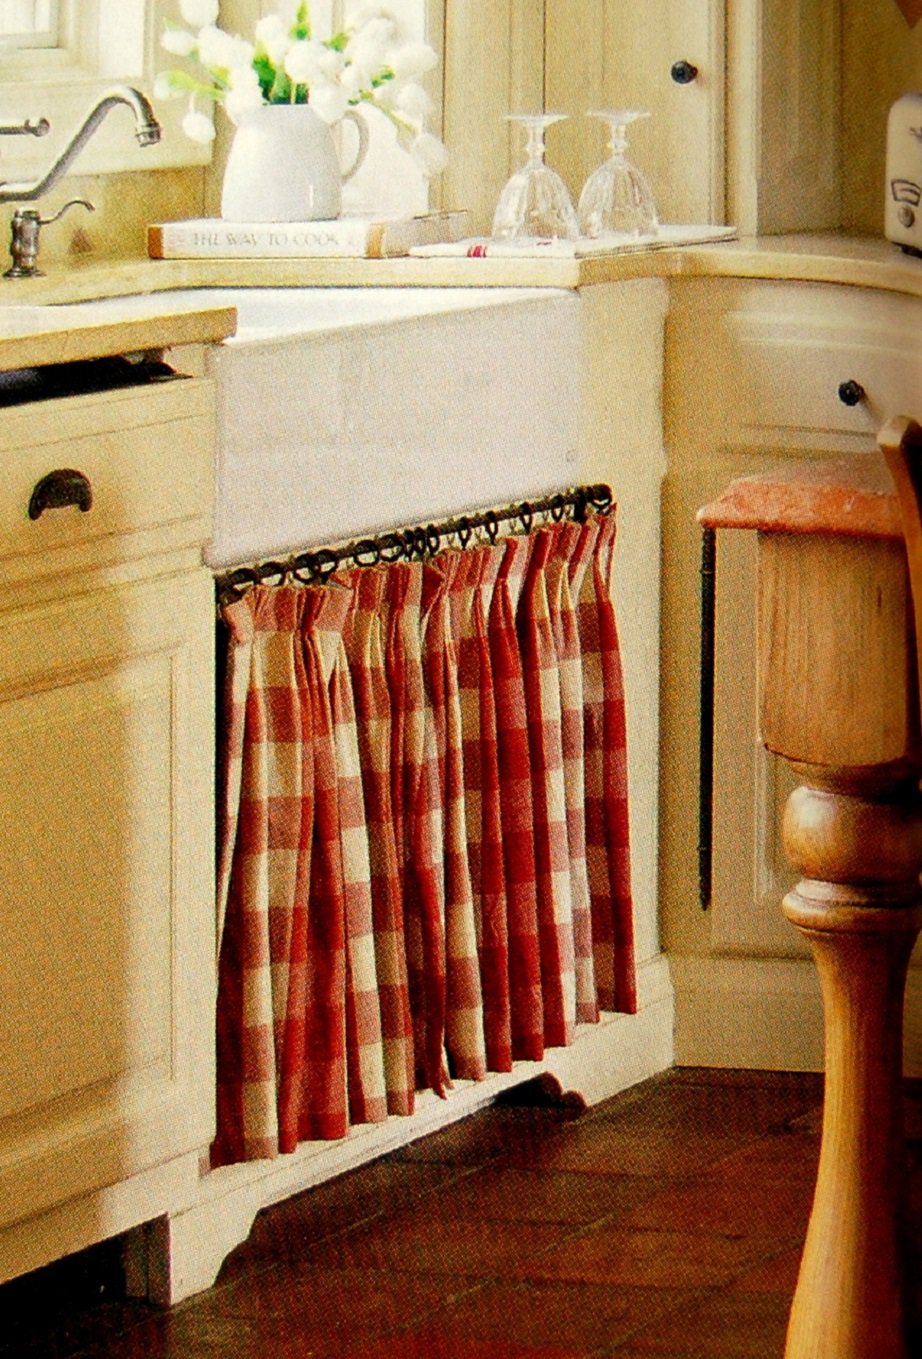 Ανακαινίστε τα παλιά ντουλάπια της κουζίνας σας με αυτόν τον πολύ οικονομικό τρόπο - Φωτογραφία 5